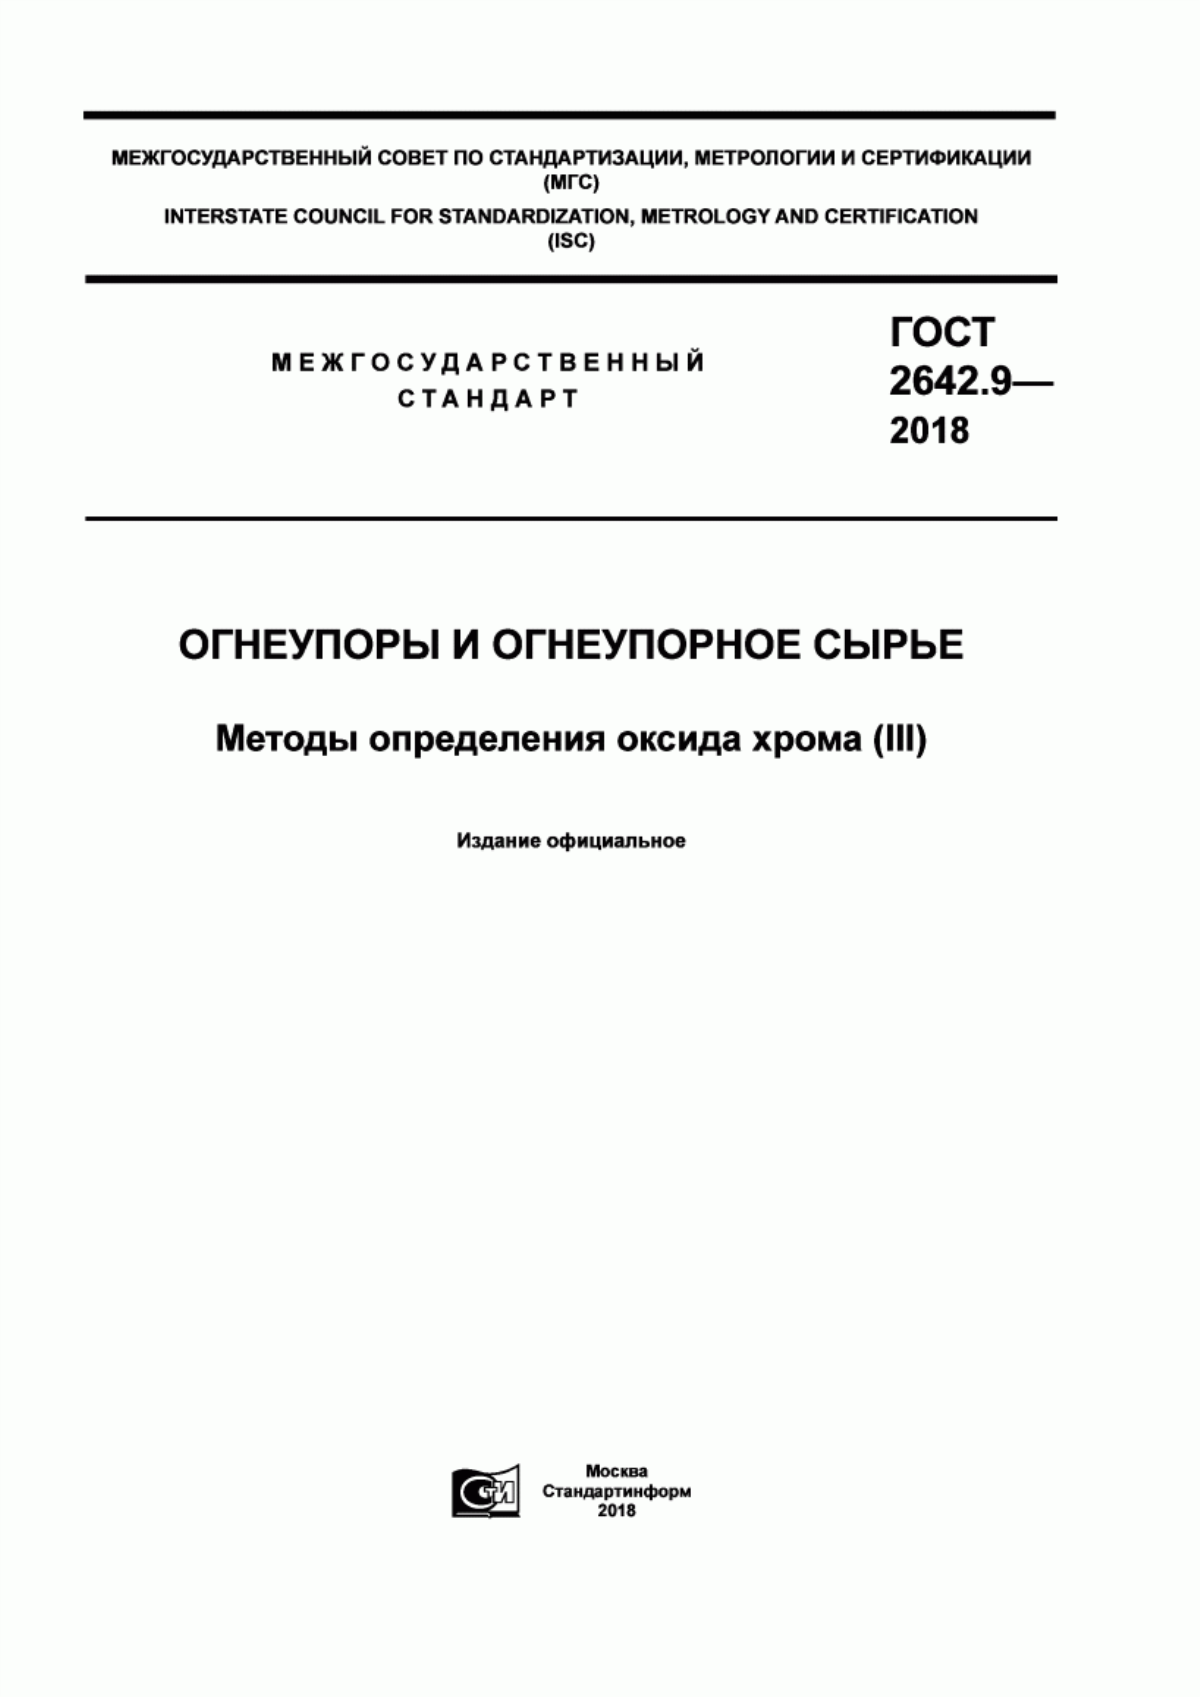 ГОСТ 2642.9-2018 Огнеупоры и огнеупорное сырье. Методы определения оксида хрома (III)